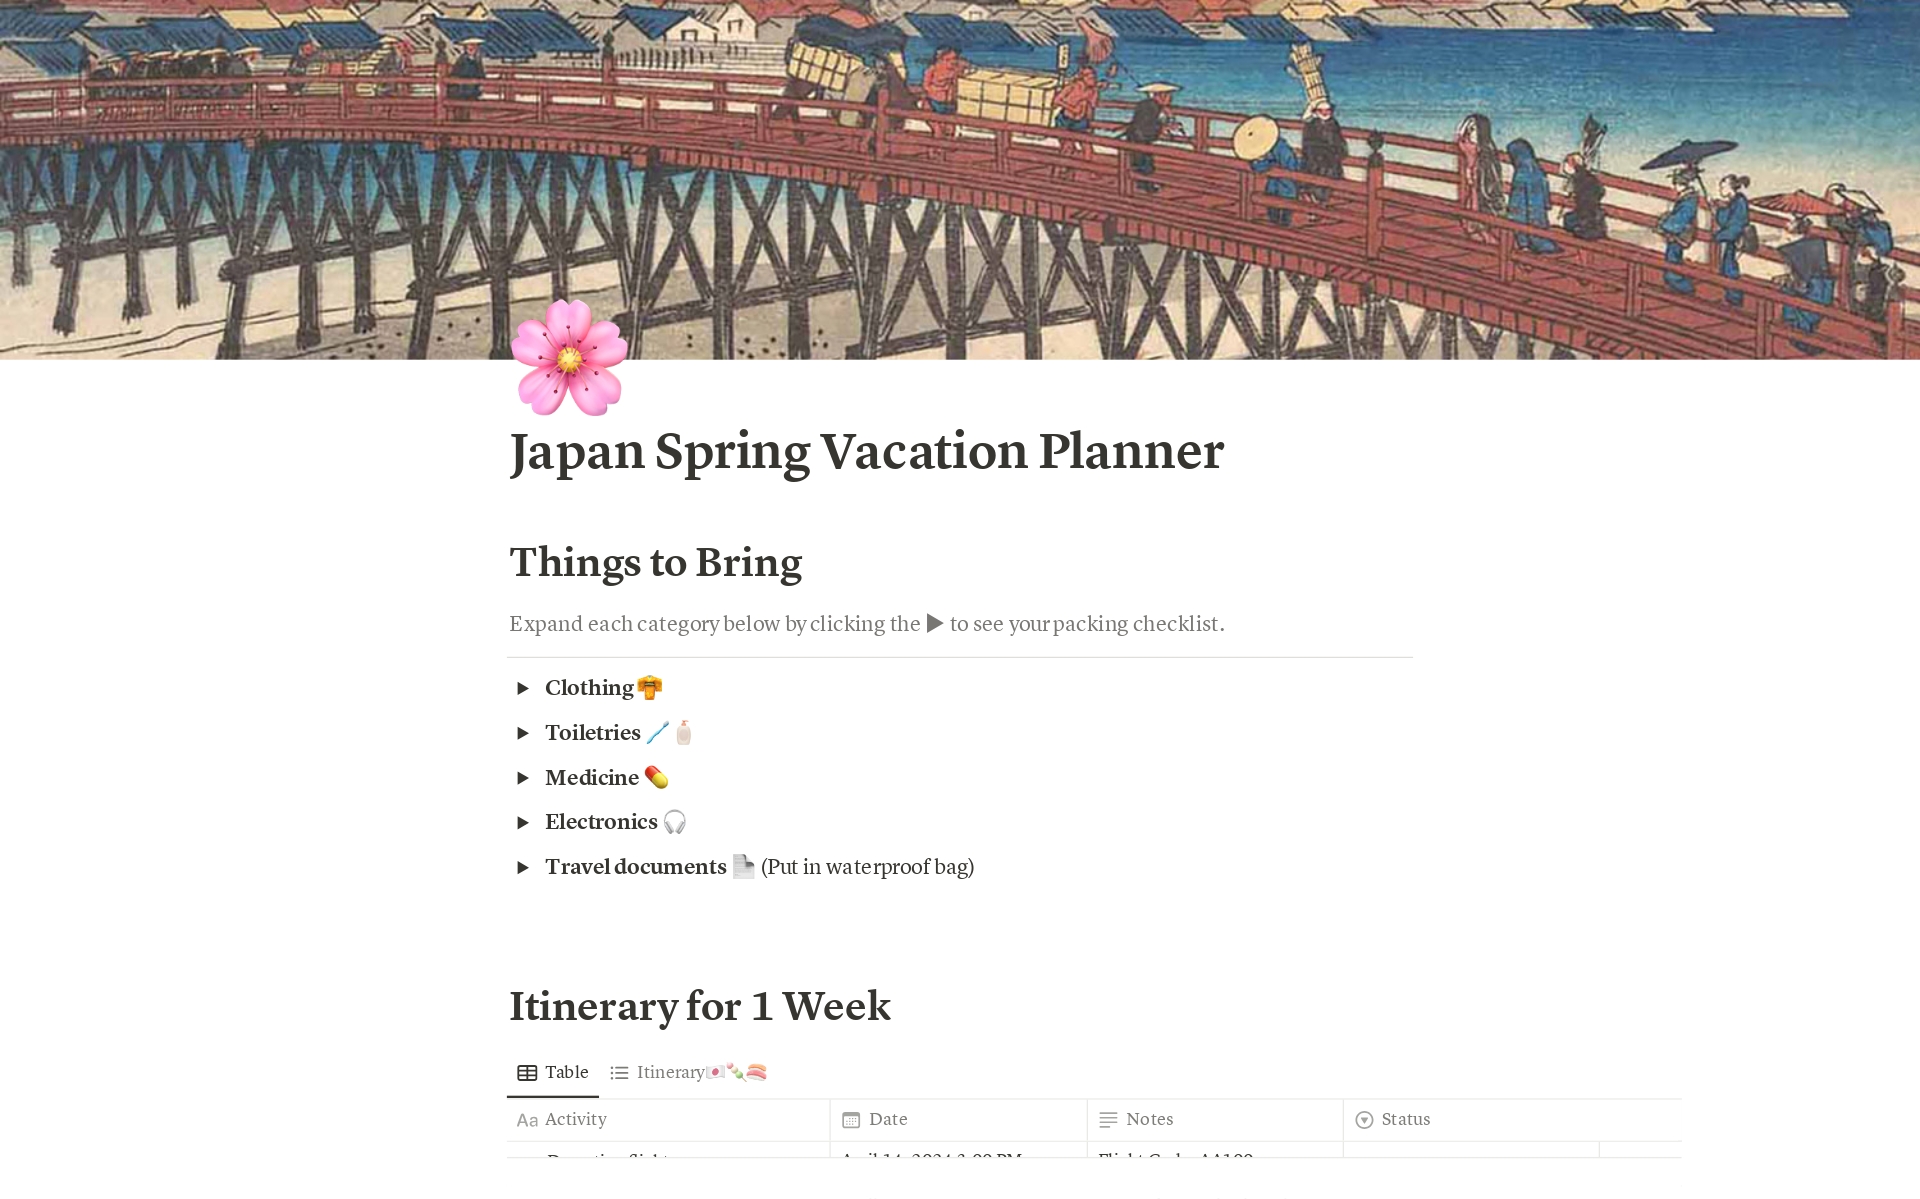 Aperçu du modèle de Japan Spring Vacation Planner